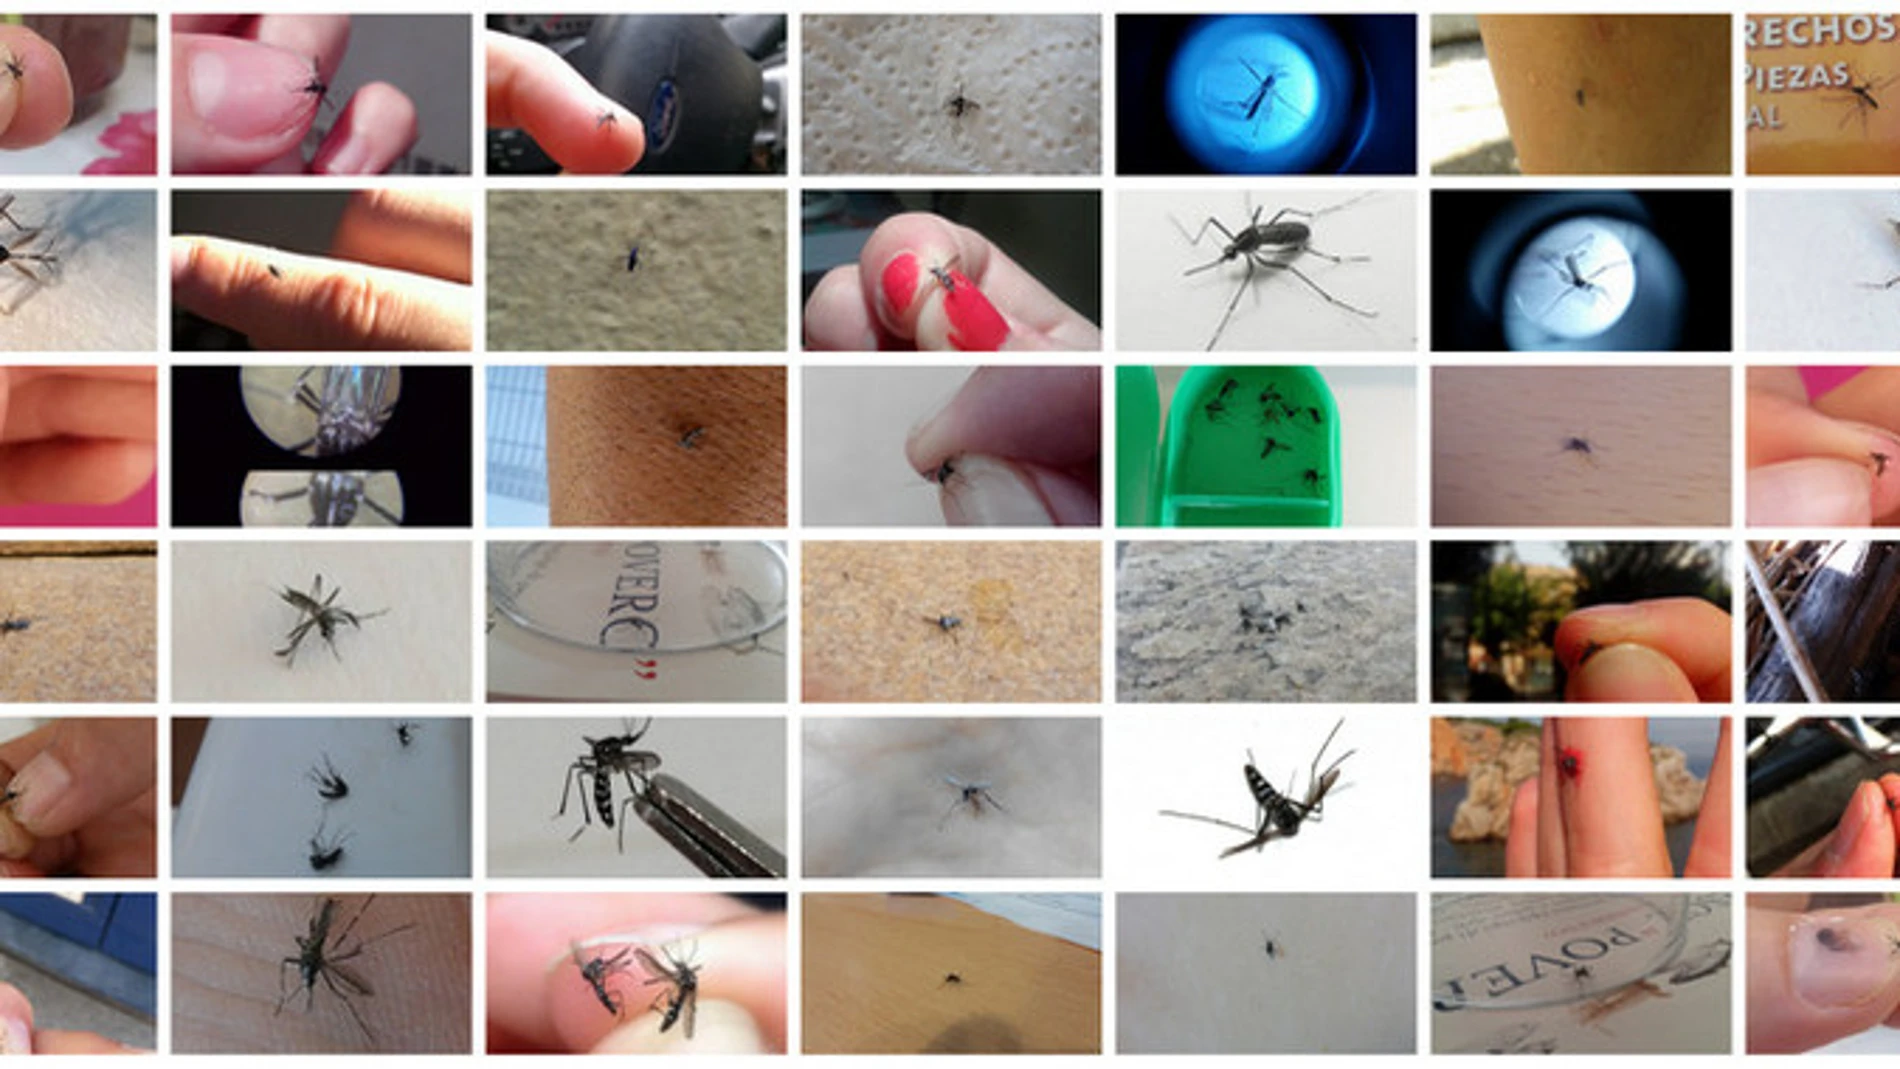 Fotos de mosquitos enviadas por los ciudadanos a Mosquito Alert